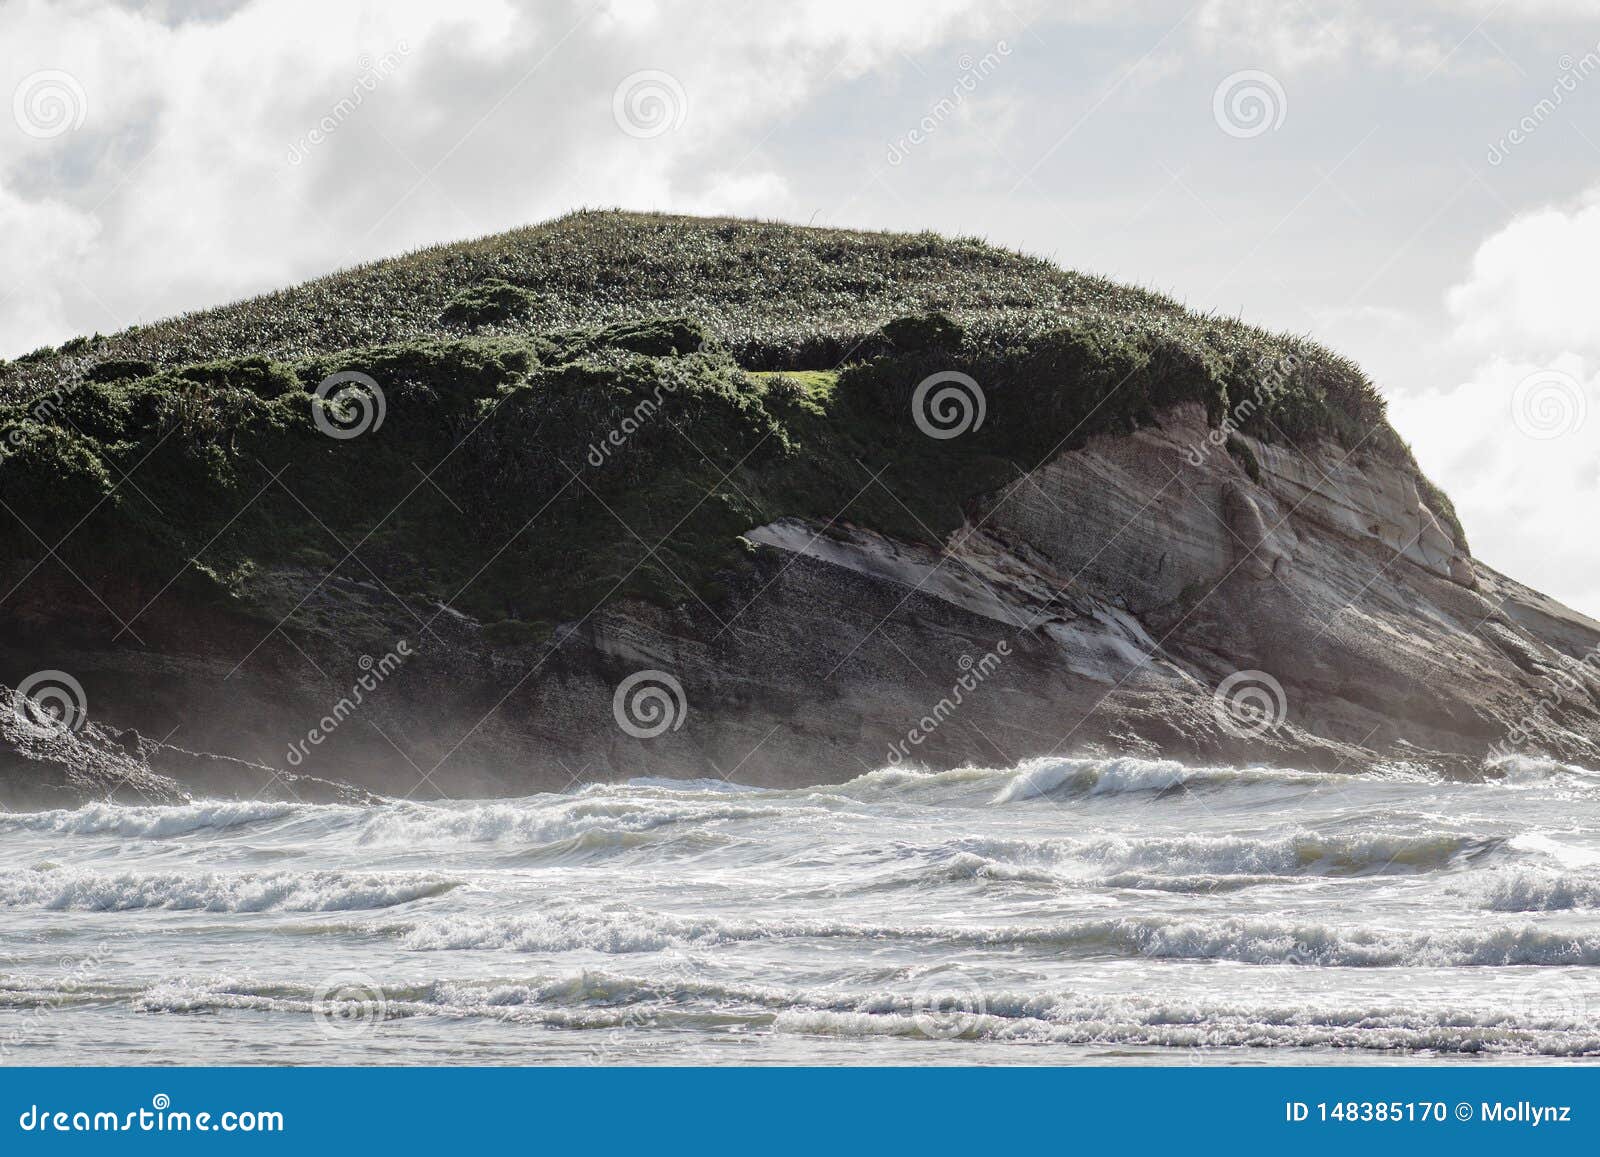 La scogliera costiera fronteggia dove la terra incontra il mare Spiaggia di Wharariki. La scogliera costiera fronteggia dove la terra incontra il mare La spiaggia di Wharariki ? una spiaggia ad ovest dell'addio del capo, il punto pi? northernmost dell'isola del sud della Nuova Zelanda